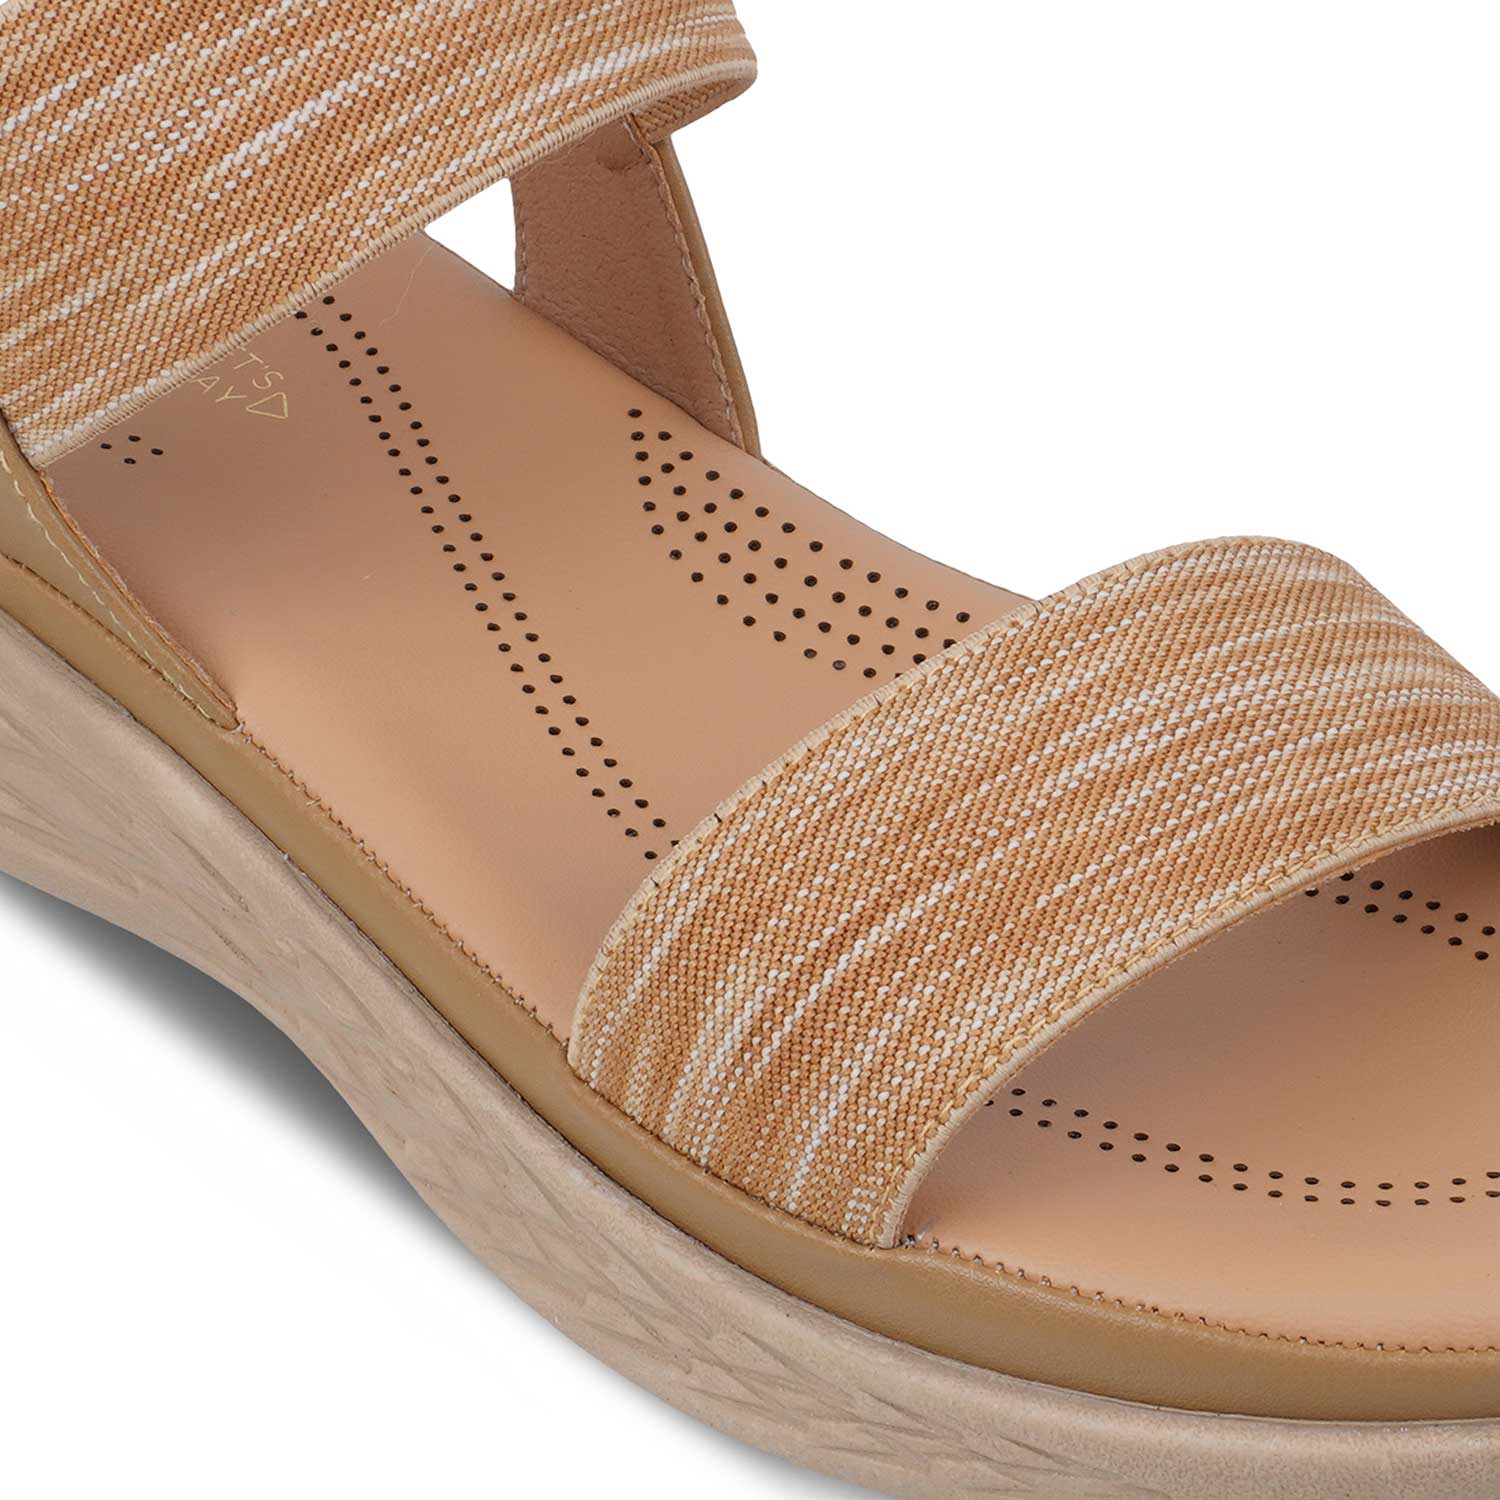 The Hintle Beige Women's Casual Wedge Sandals Tresmode